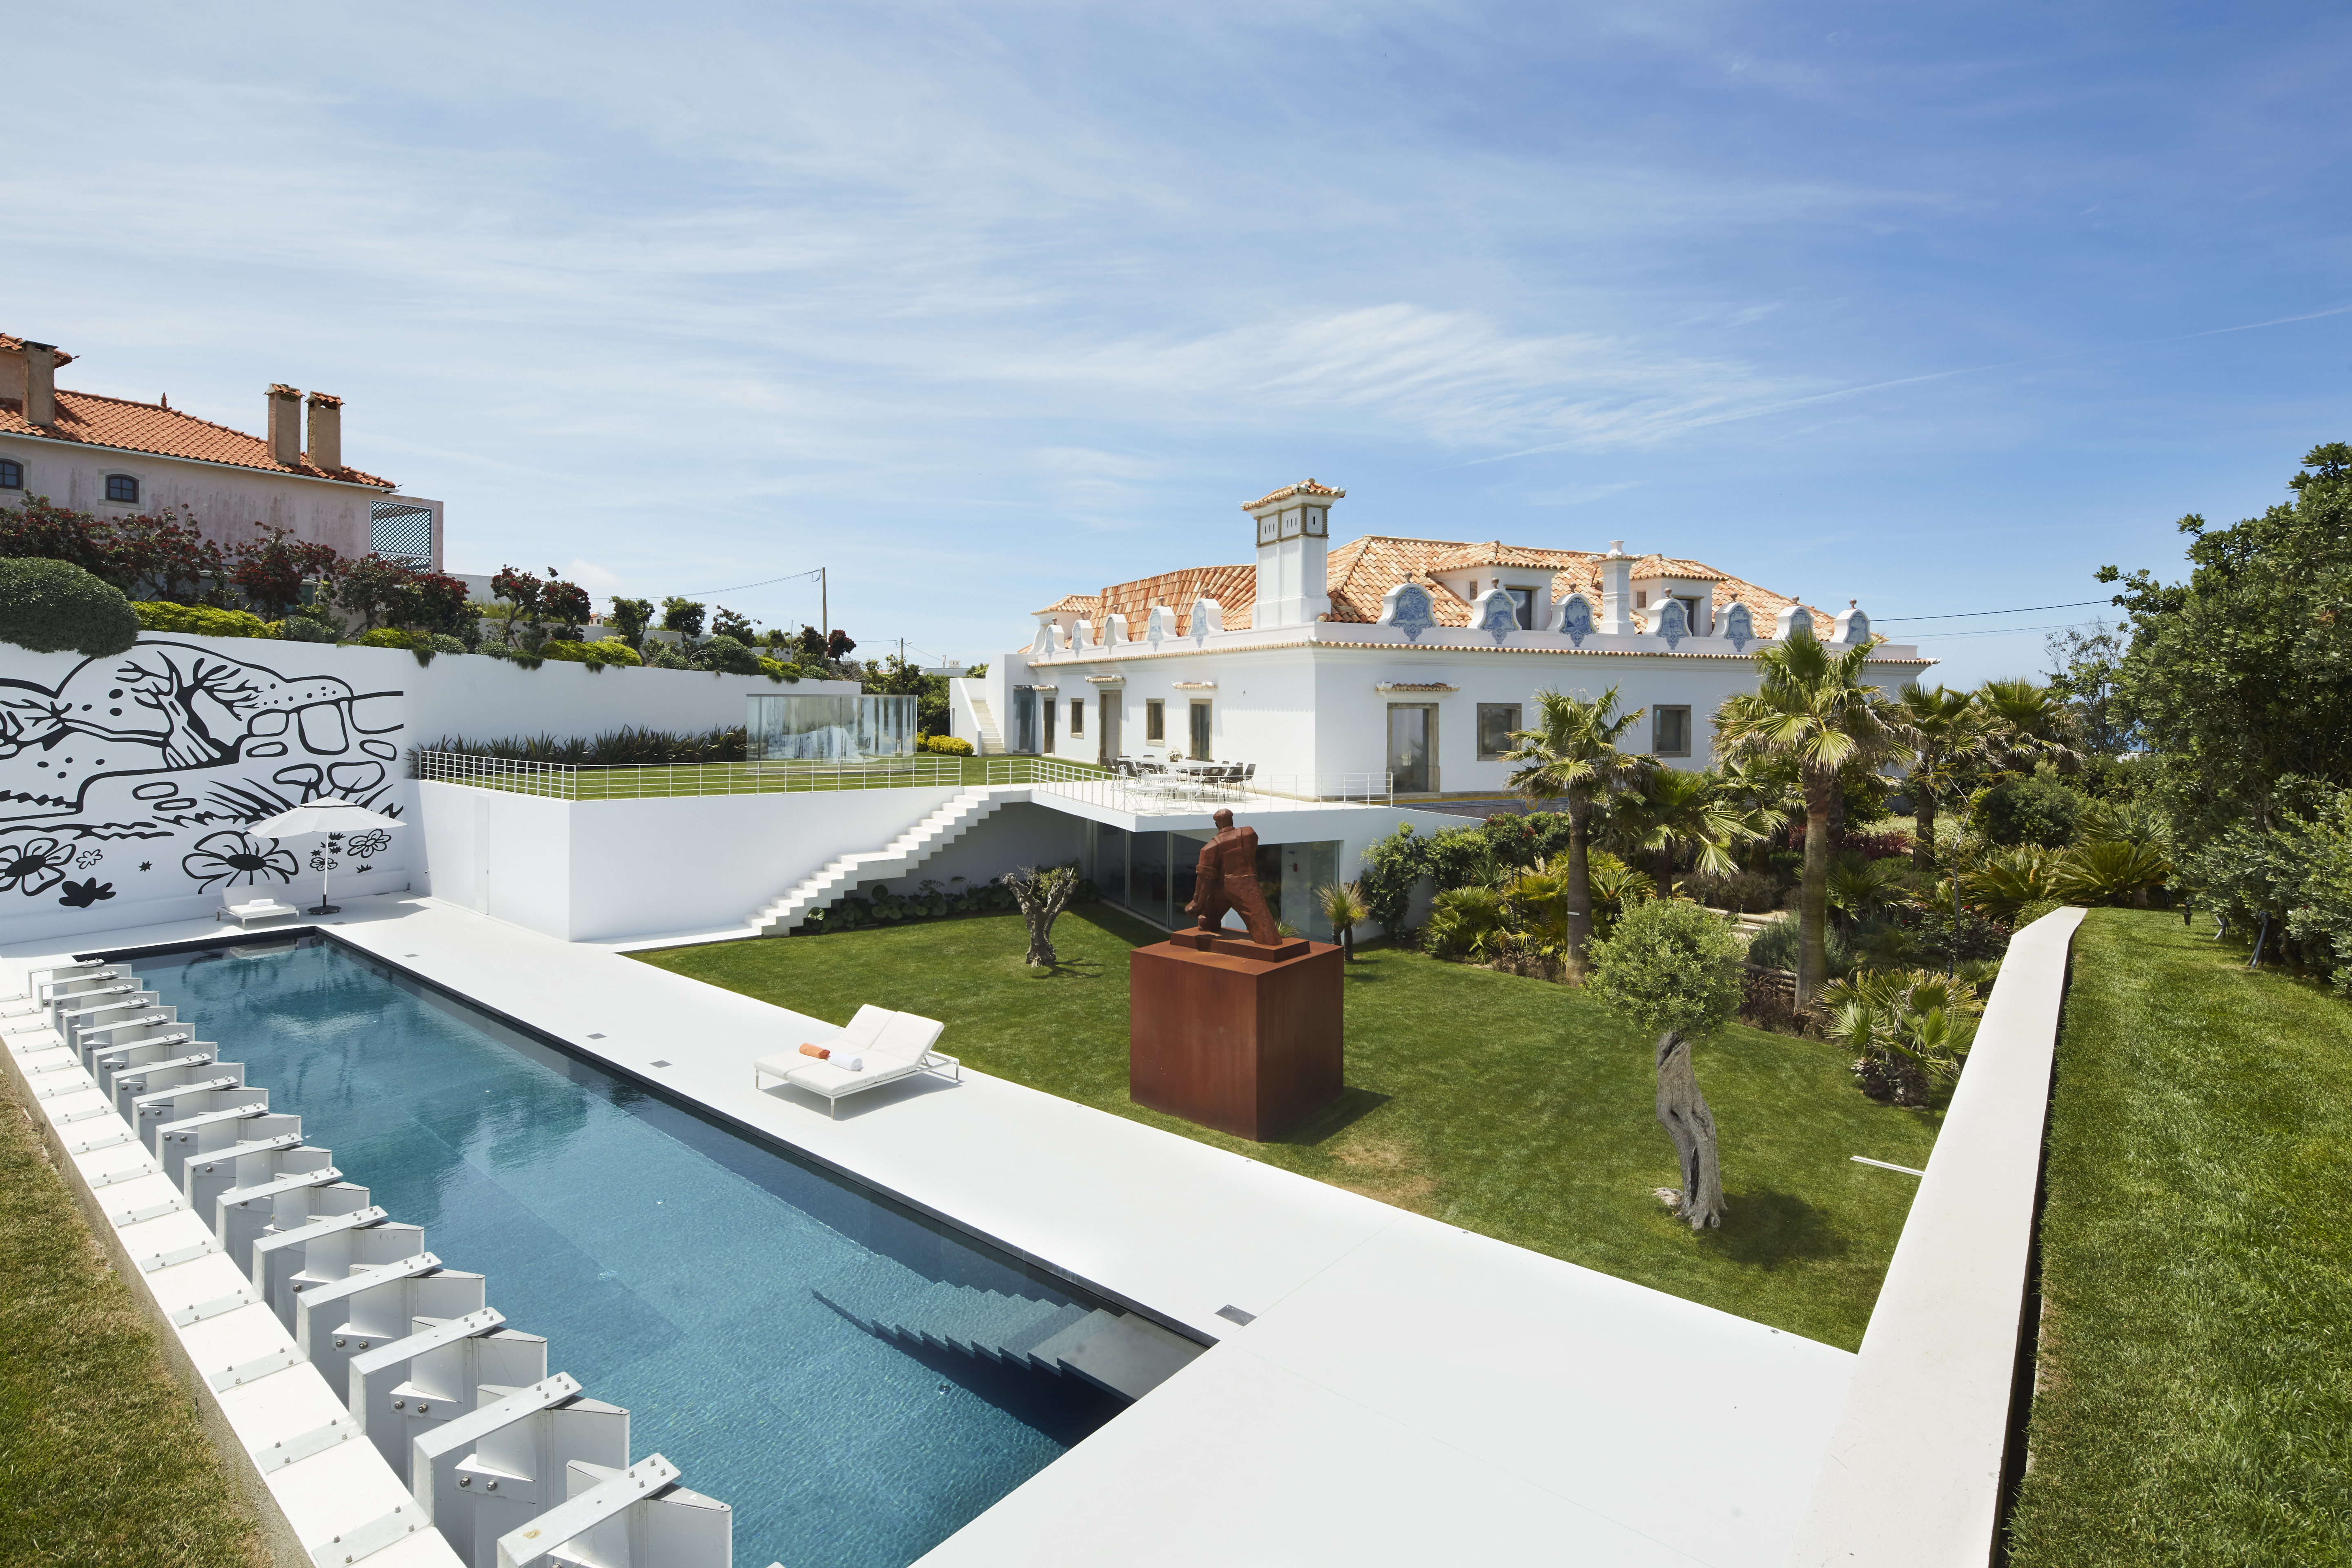 La casa perfecta para un coleccionista en Portugal fue intervenida por un arquitecto colombiano